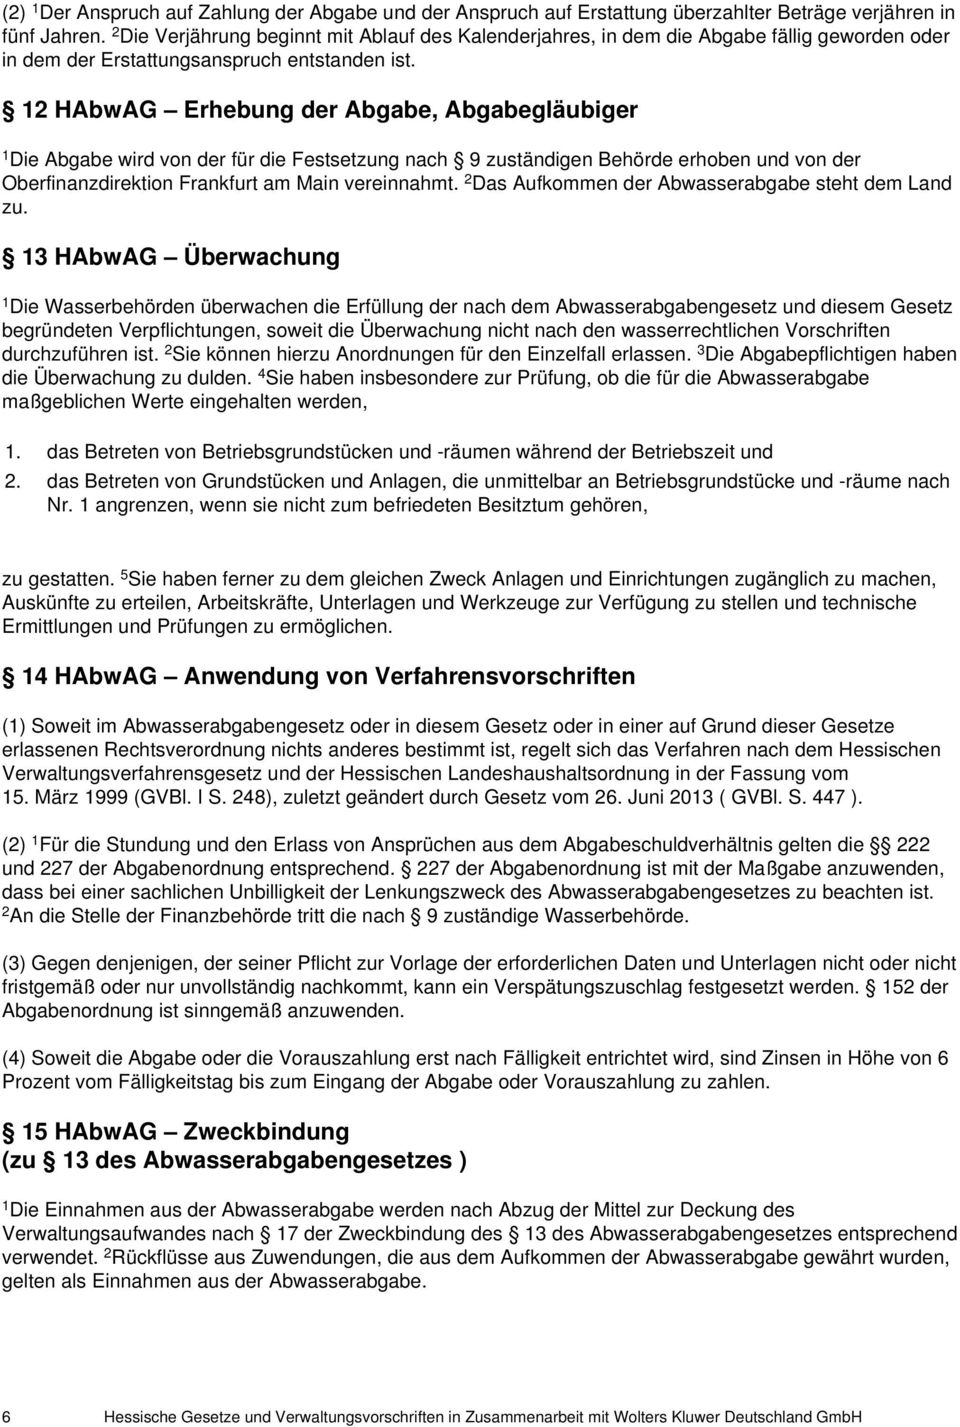 2 HAbwAG Erhebung der Abgabe, Abgabegläubiger Die Abgabe wird von der für die Festsetzung nach 9 zuständigen Behörde erhoben und von der Oberfinanzdirektion Frankfurt am Main vereinnahmt.